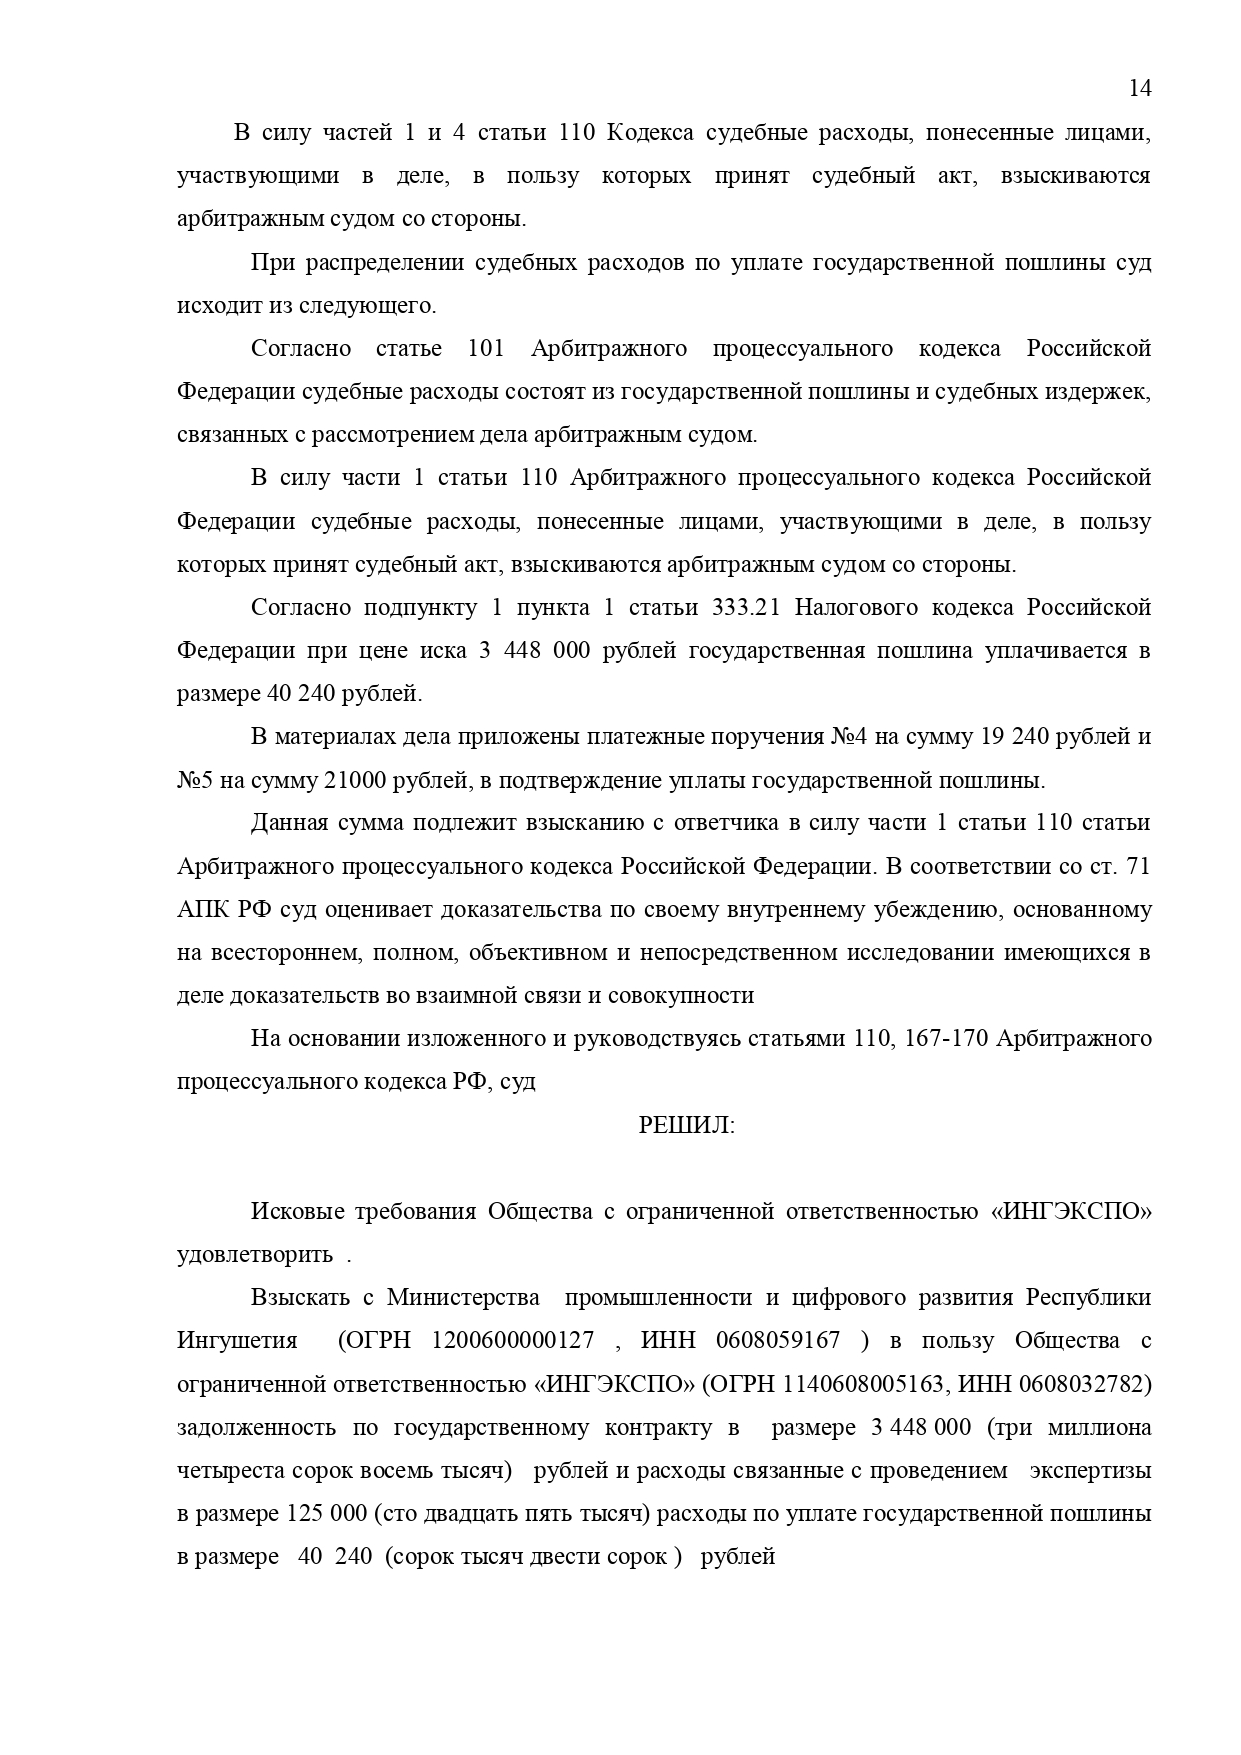 Арбитражный суд Республики Ингушетии вынес решение по делу №А18-1421/2020